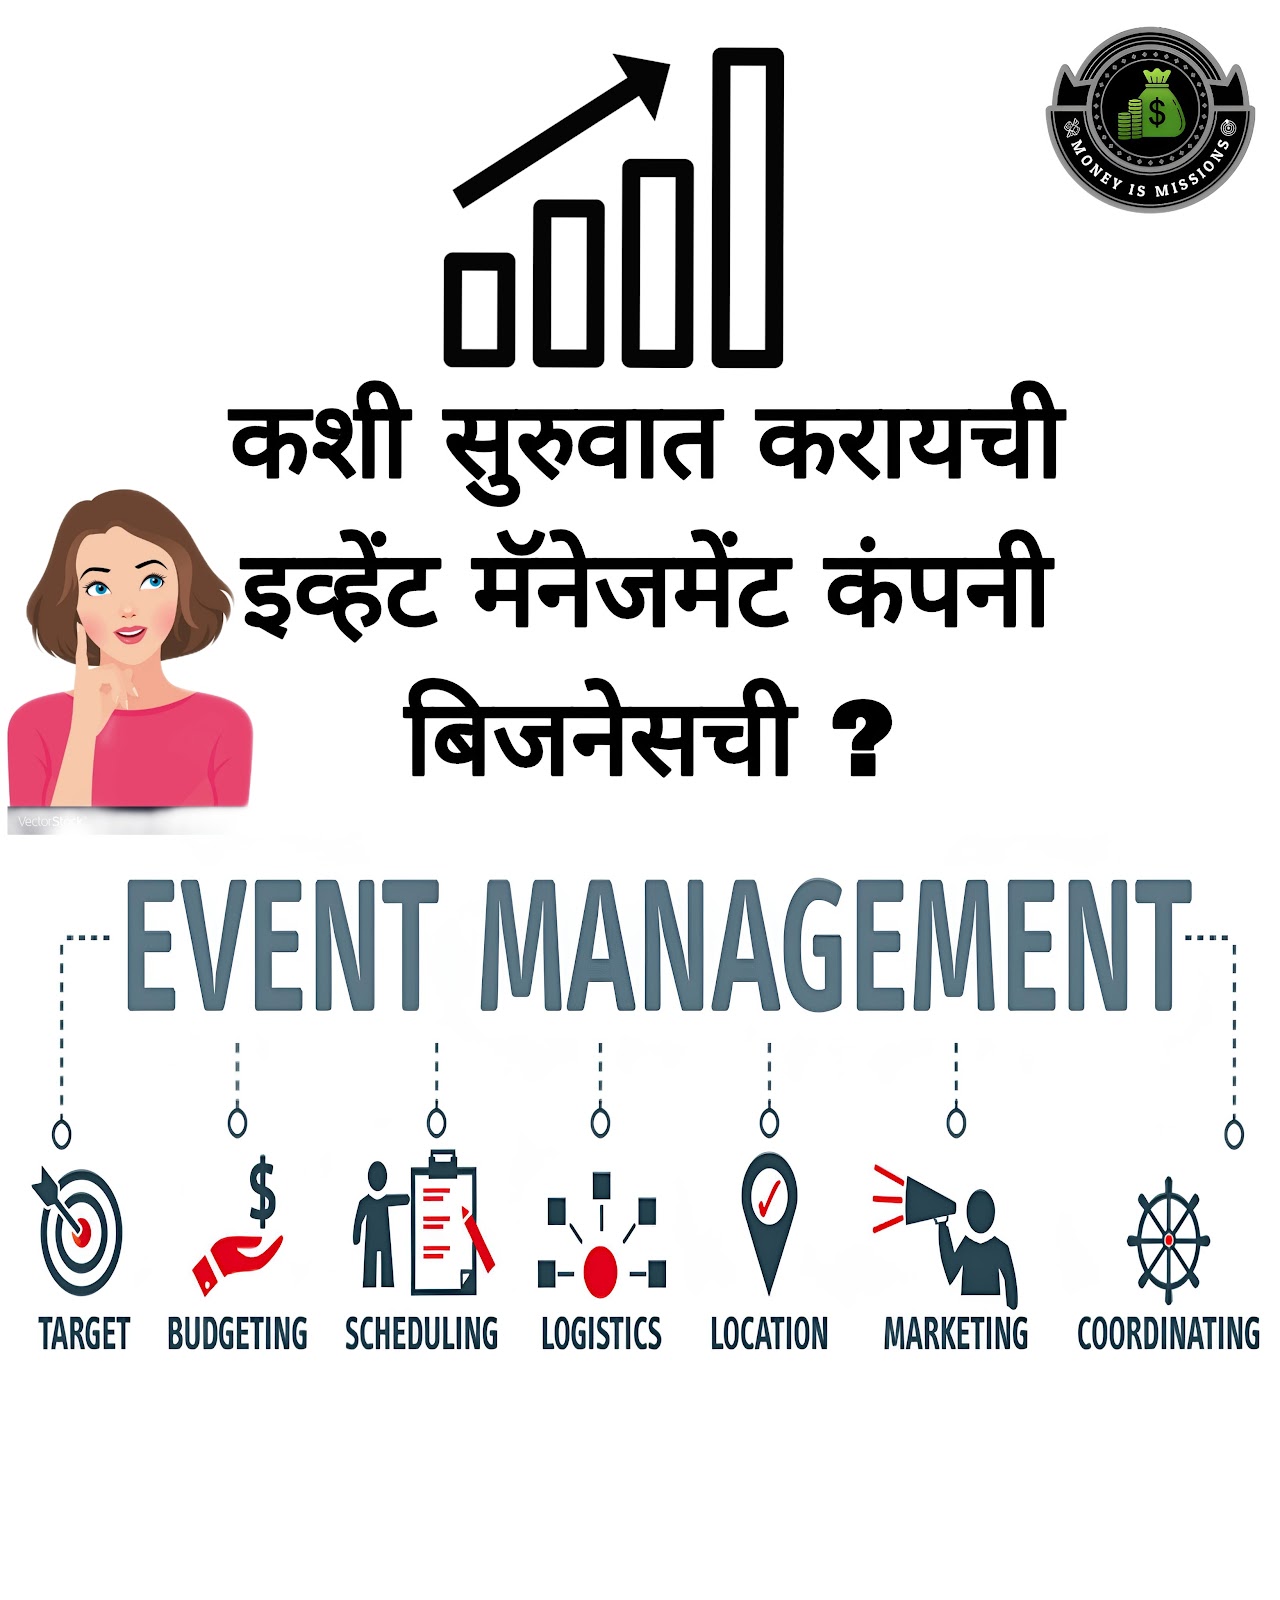 कशी सुरुवात करायची इव्हेंट मॅनेजमेंट कंपनी बिजनेसची ? How to Start an Event Management Business.